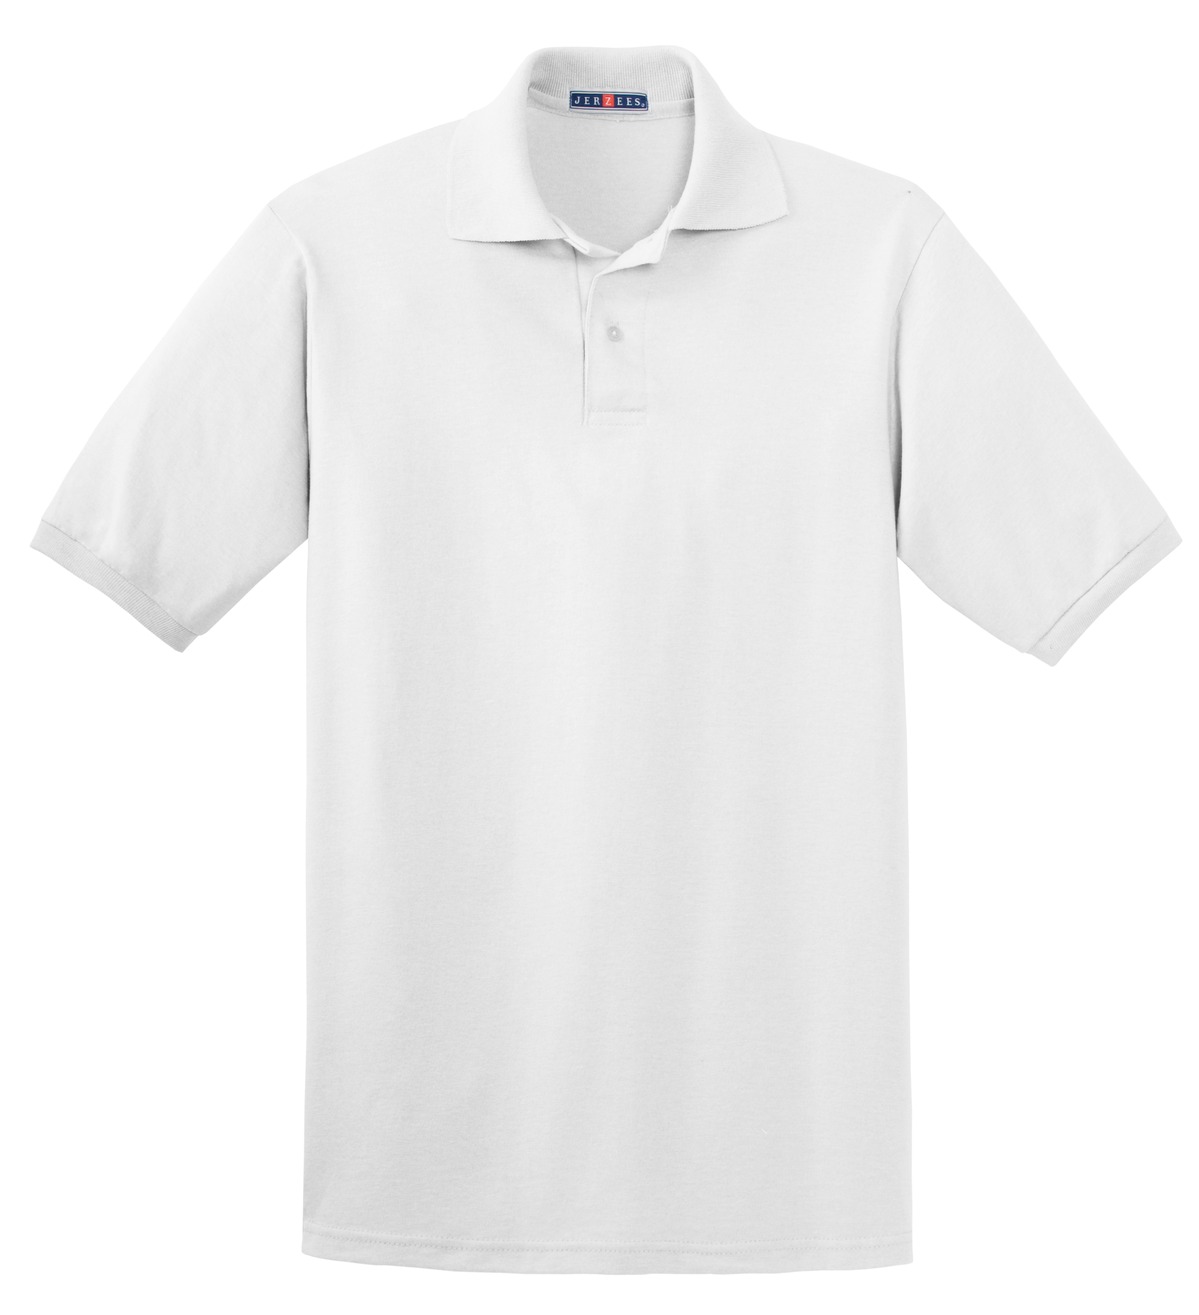 JERZEES ® - SpotShield 5.6-Ounce Jersey Knit Sport Shirt. 437M Questions & Answers